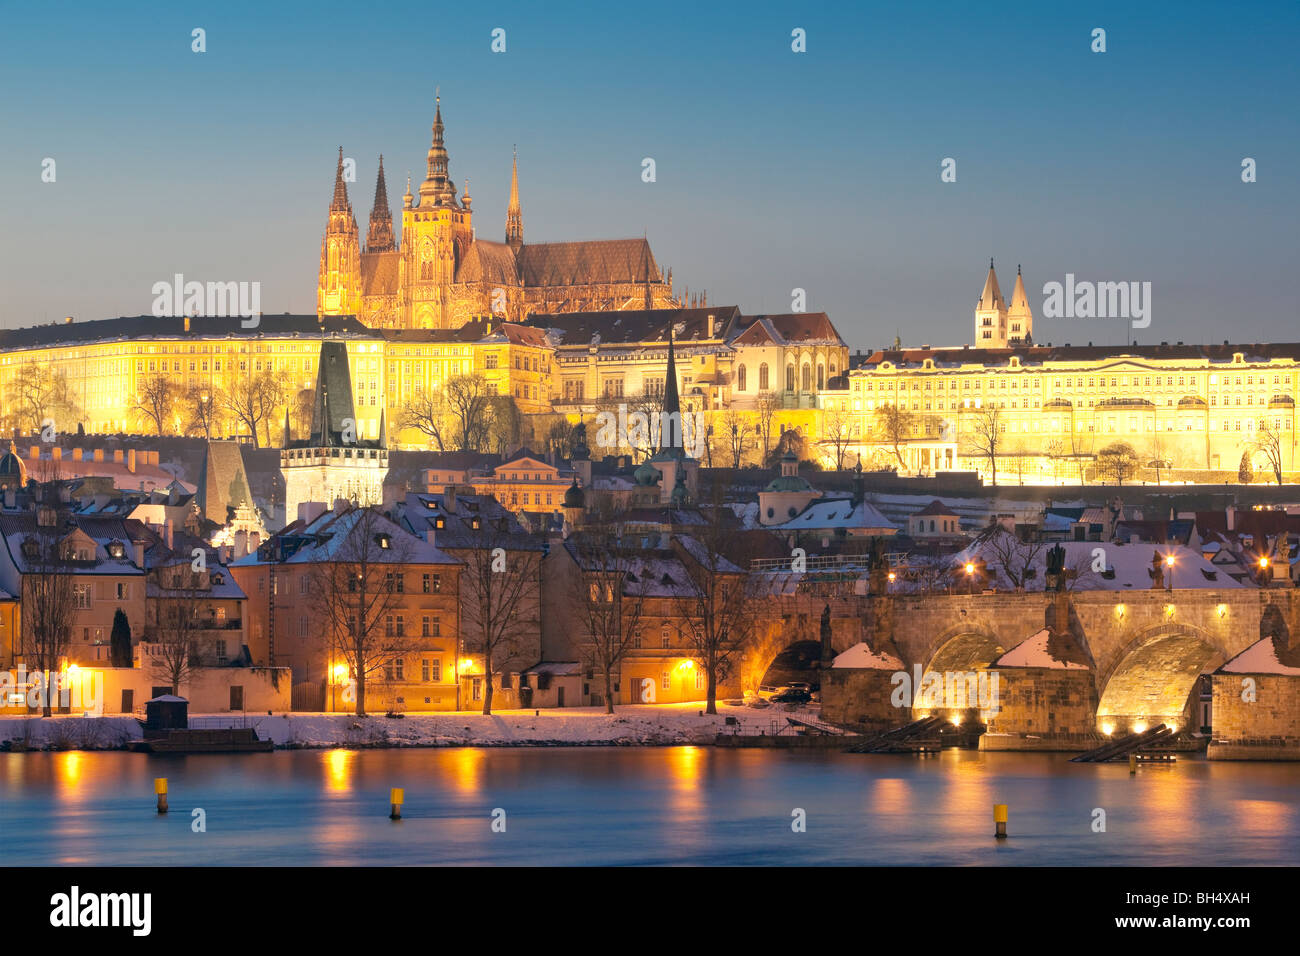 Prague - Le pont Charles et le château de Hradcany au crépuscule Banque D'Images